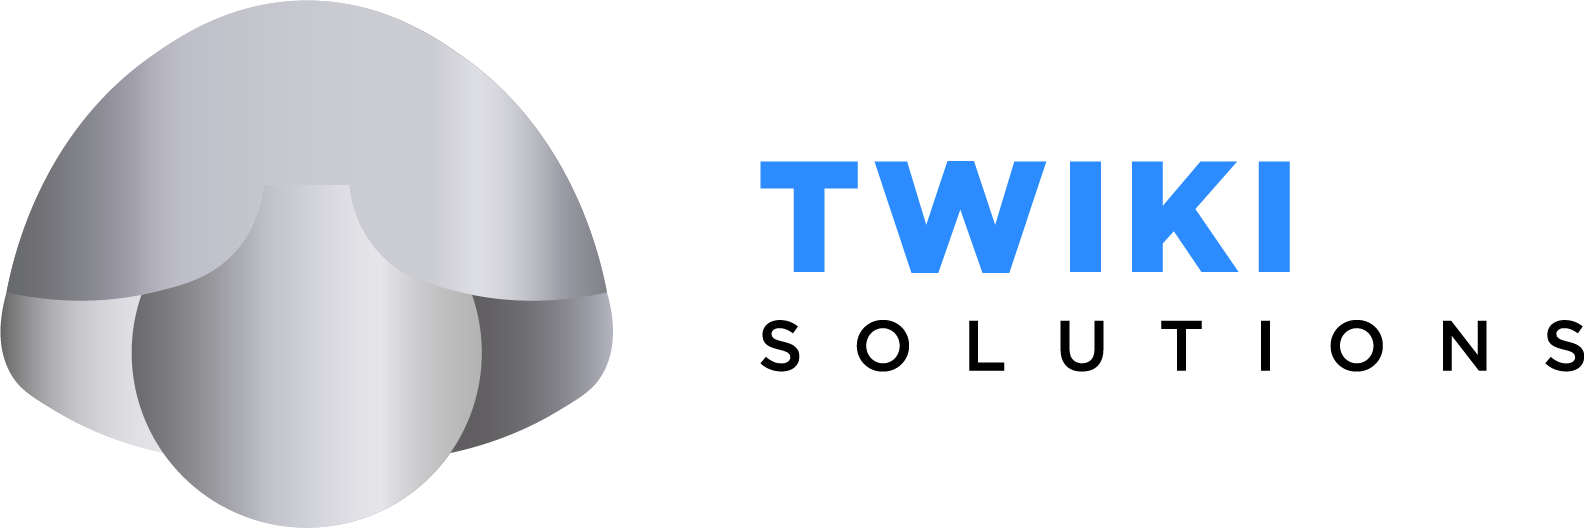 Twiki logo